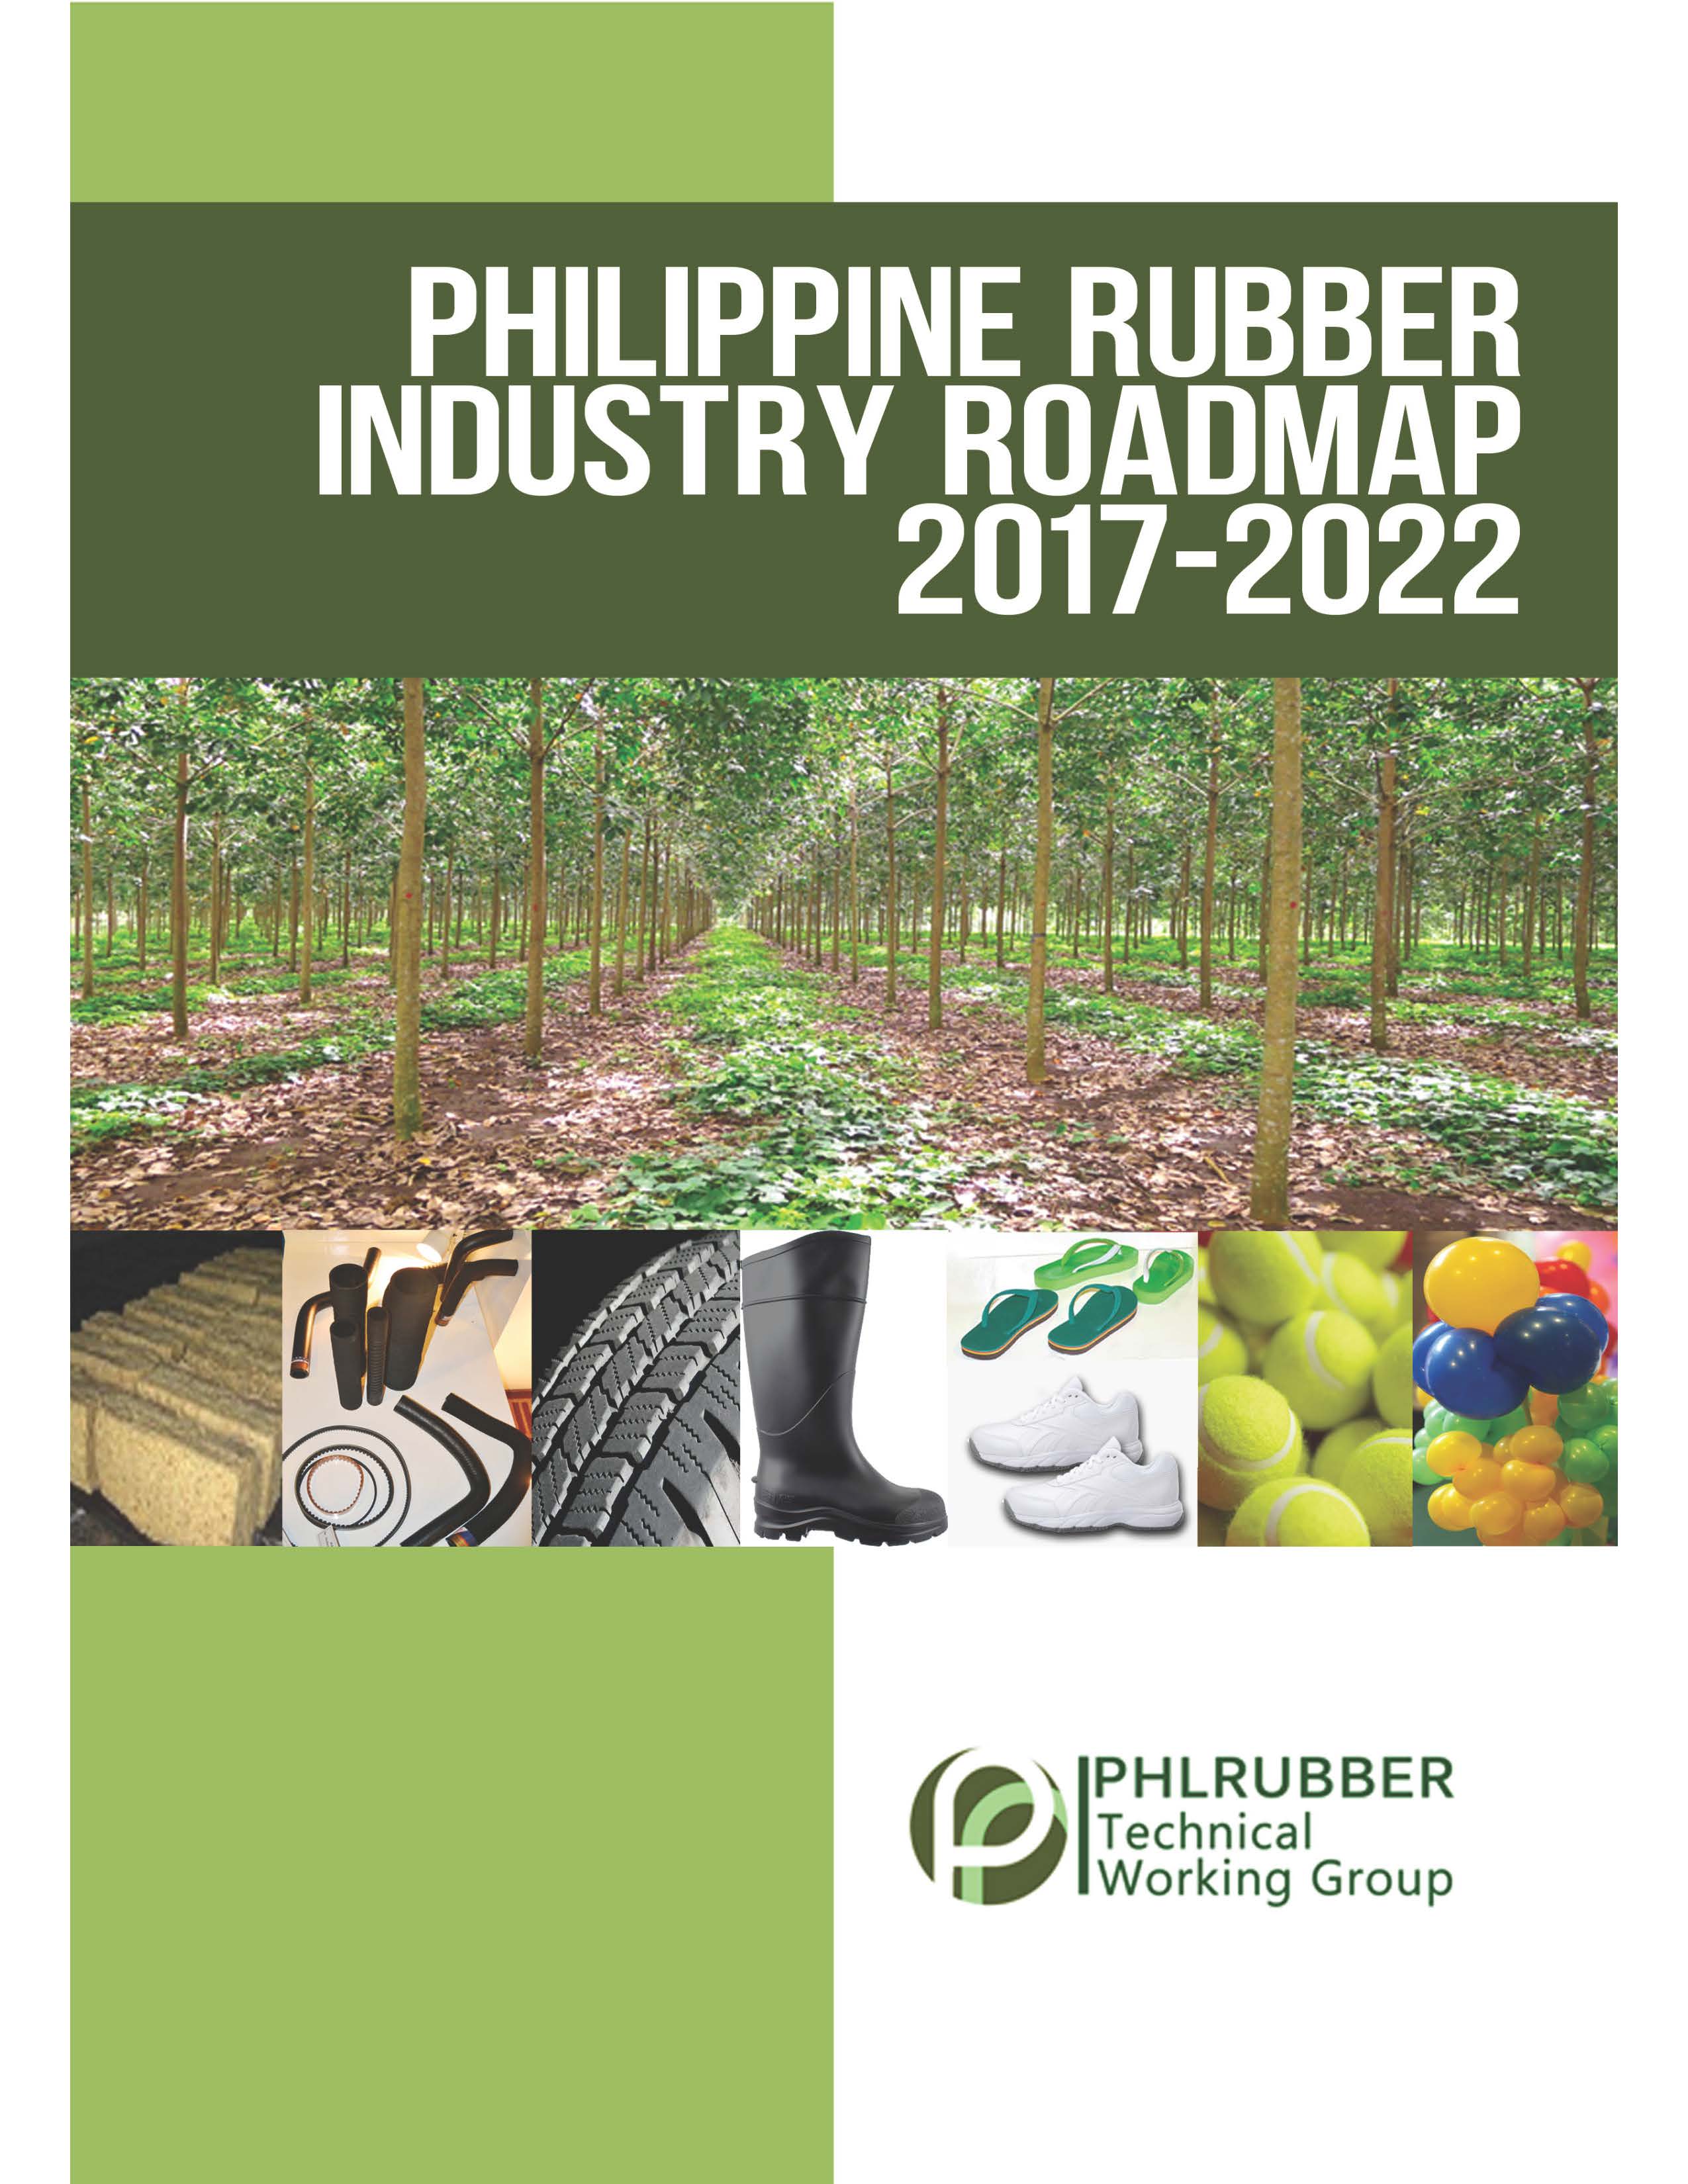 PHL Rubber Roadmap 2017-2022